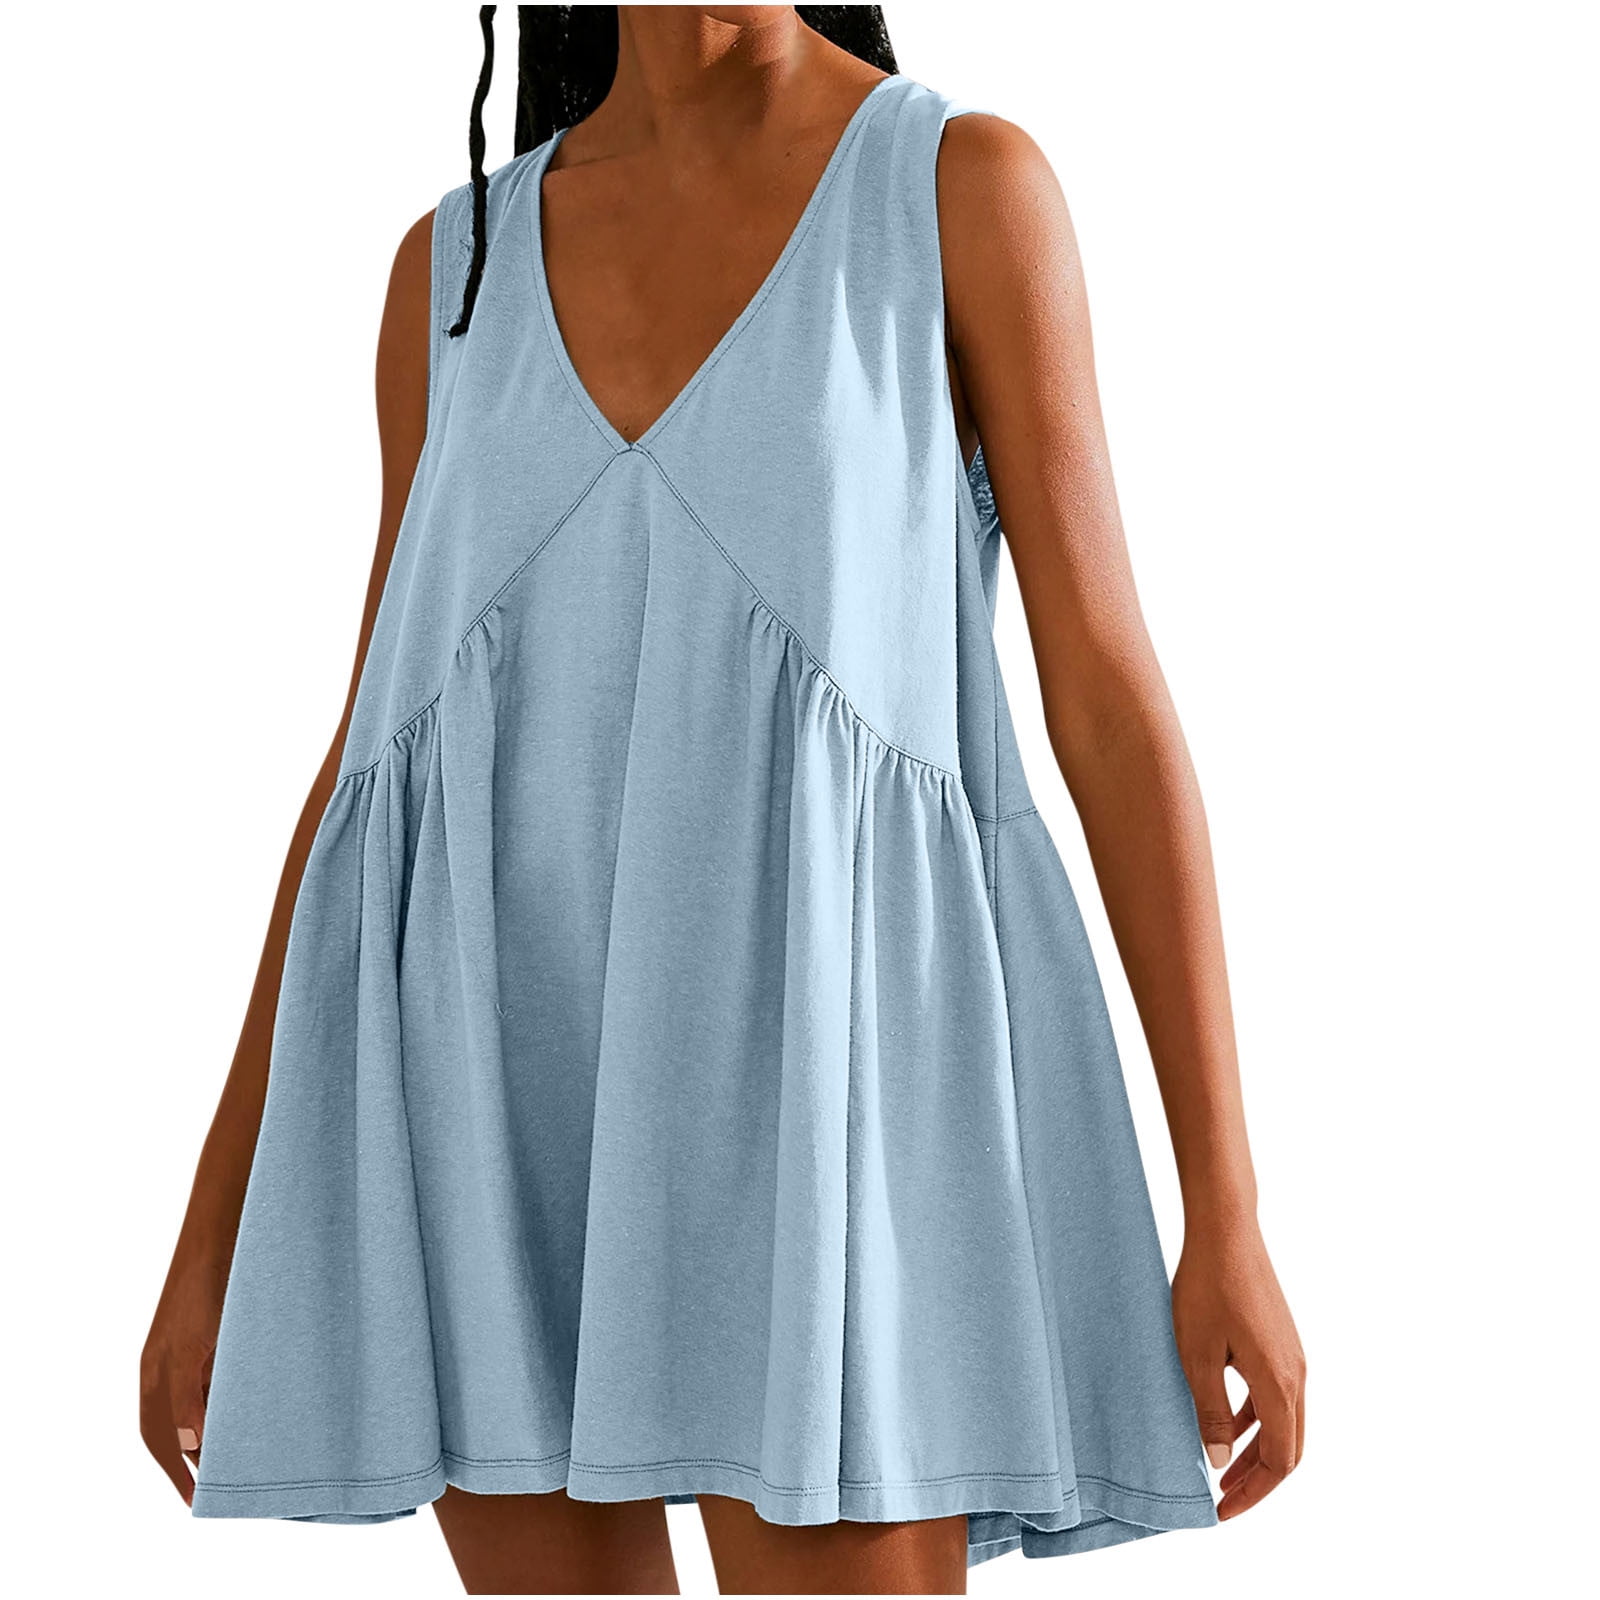 XMBPUM Sleeveless Knee Length Dress Bright Dresses for Women Summer ...